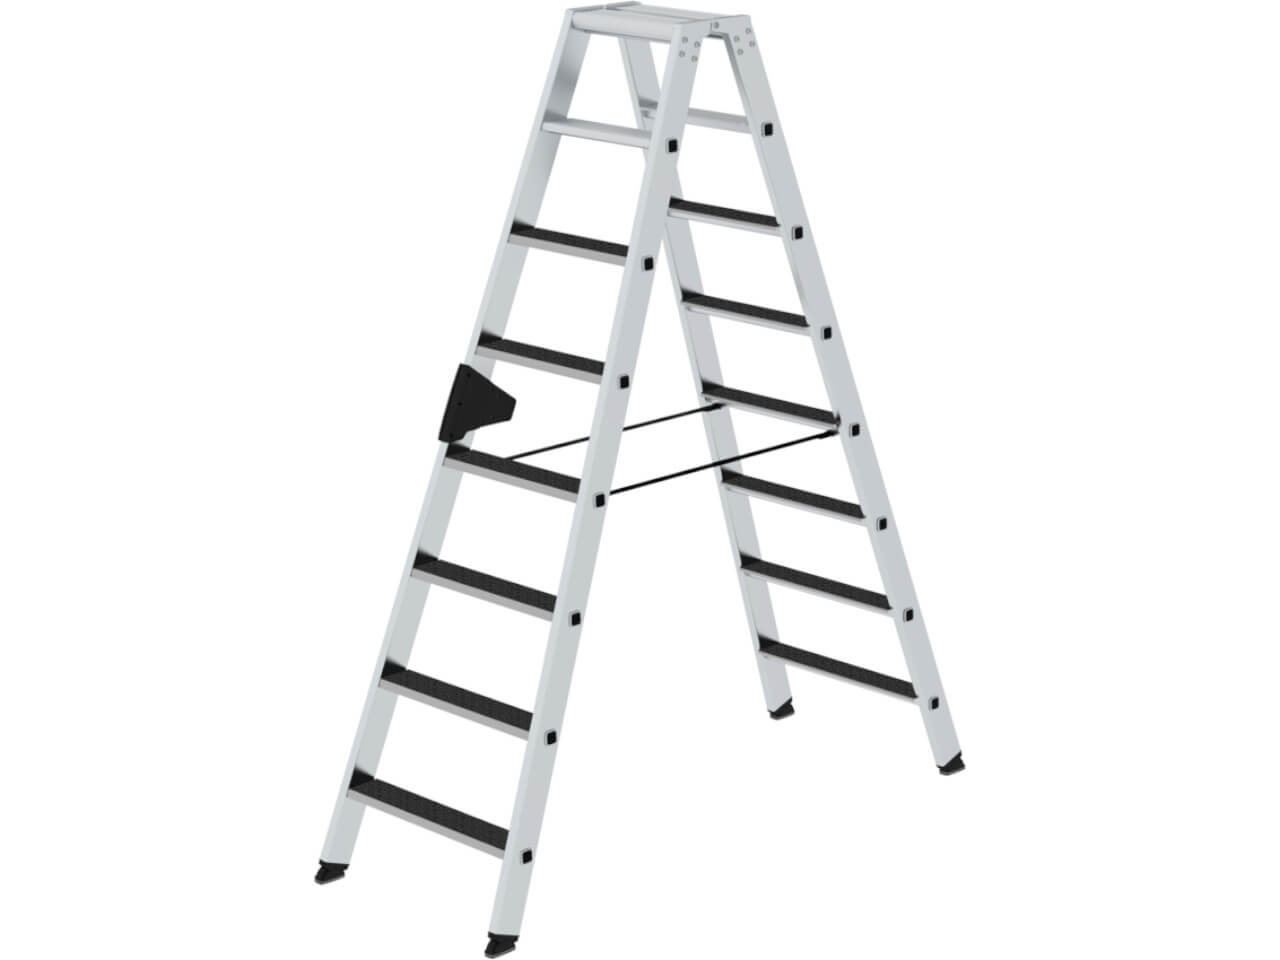 41641 beidseitig begehbare stufen stehleiter mit r13 clip-step von munk